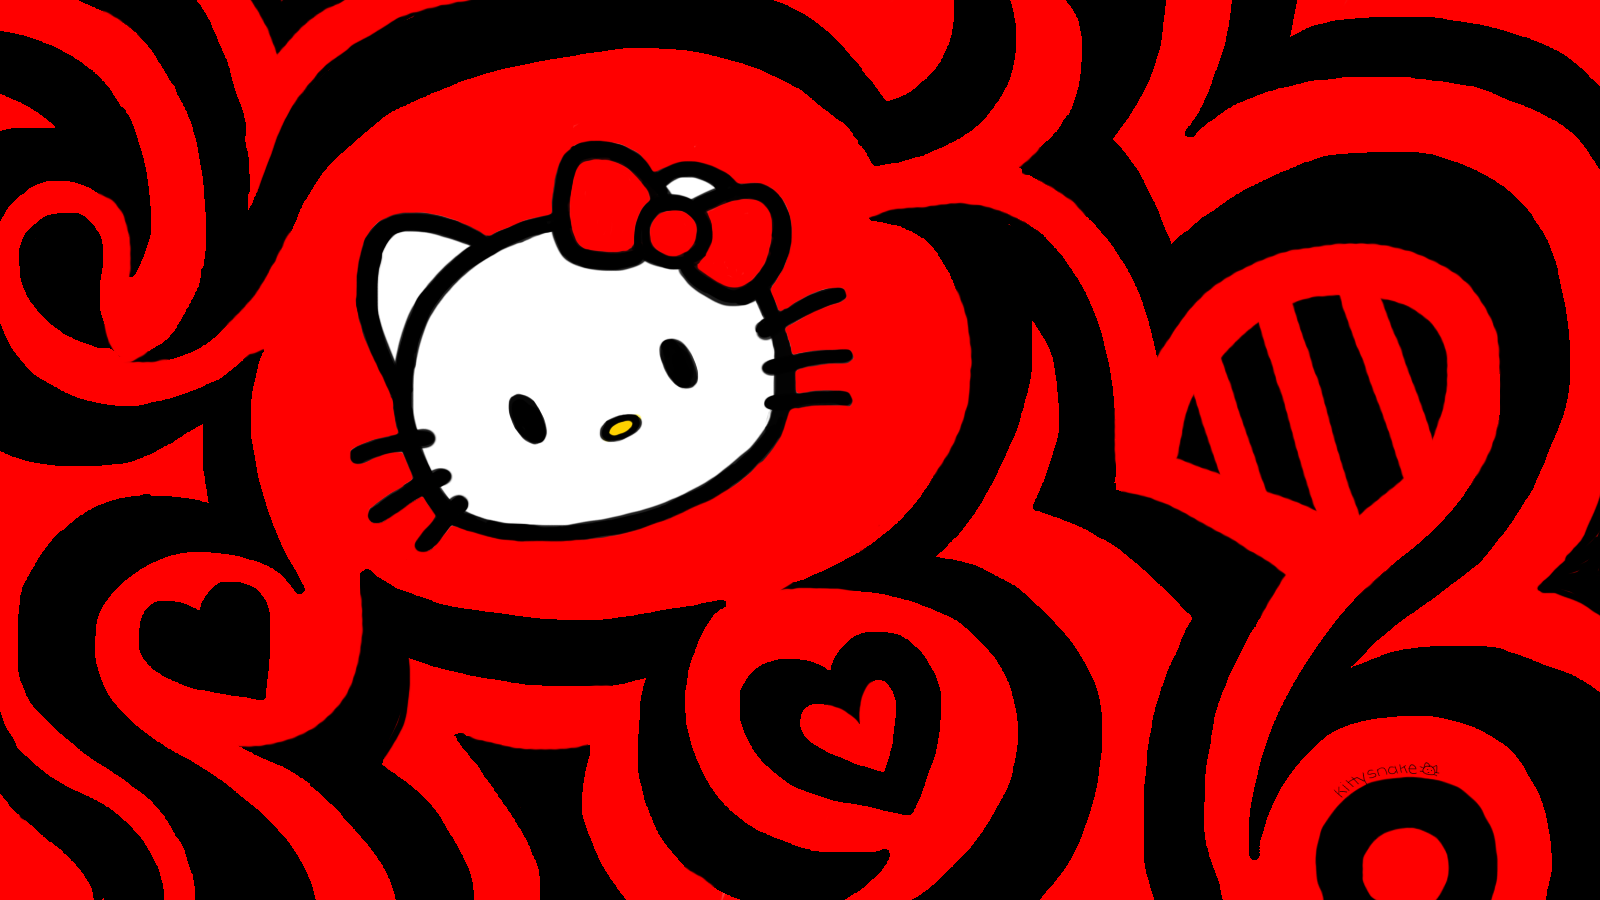 Hãy tận hưởng sự dễ chịu và ấm cúng với hình nền Hello Kitty Wallpaper. Với các mẫu họa tiết đáng yêu, bắt mắt và tinh tế, đây thực sự là lựa chọn hoàn hảo để thêm một chút màu sắc vào không gian của bạn.